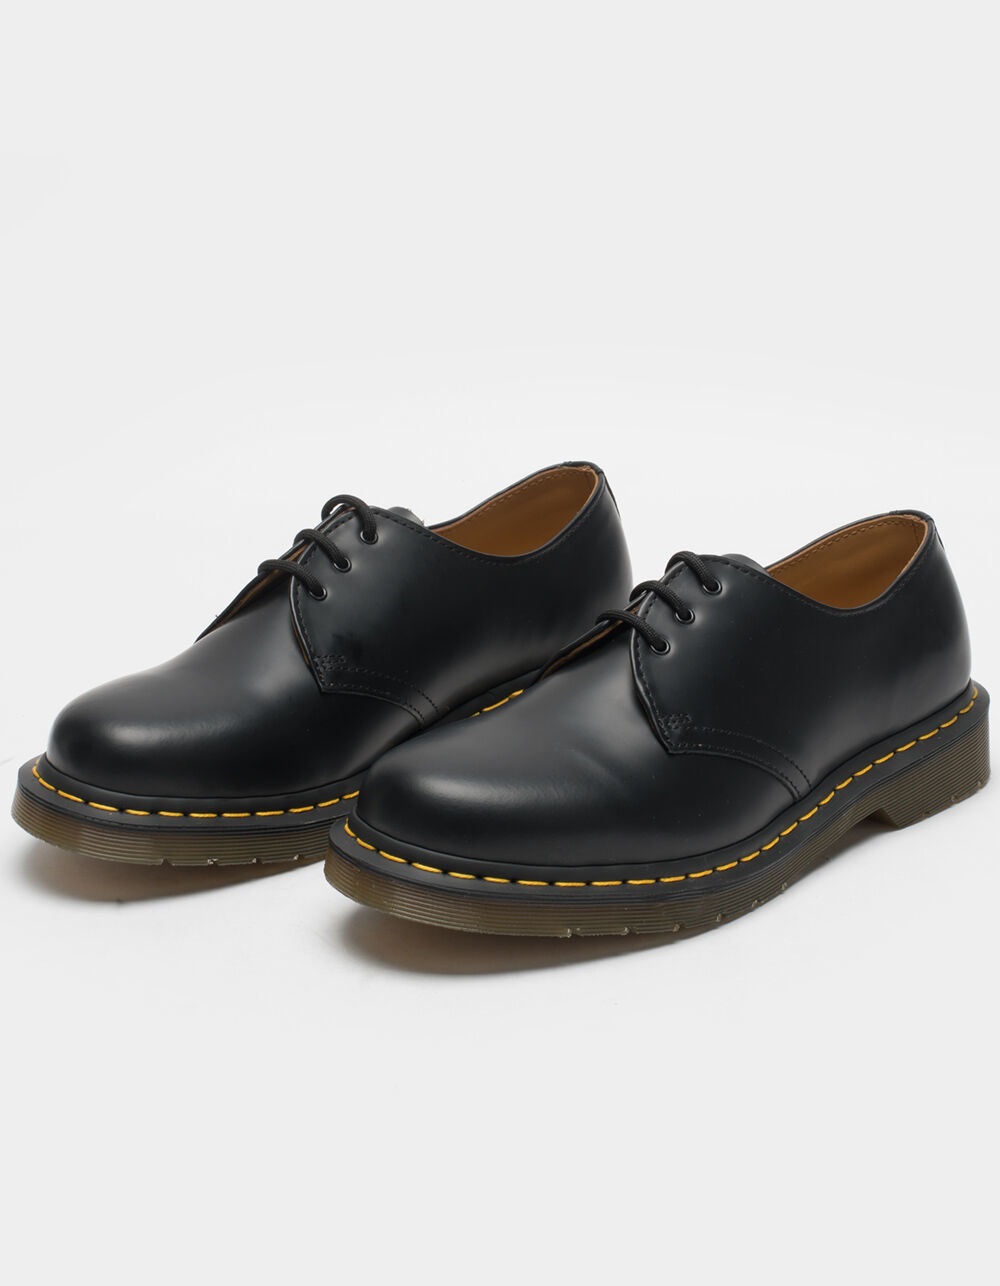 åbenbaring helvede Bloom DR. MARTENS 1461 Smooth Leather Mens Oxford Shoes - BLACK | Tillys